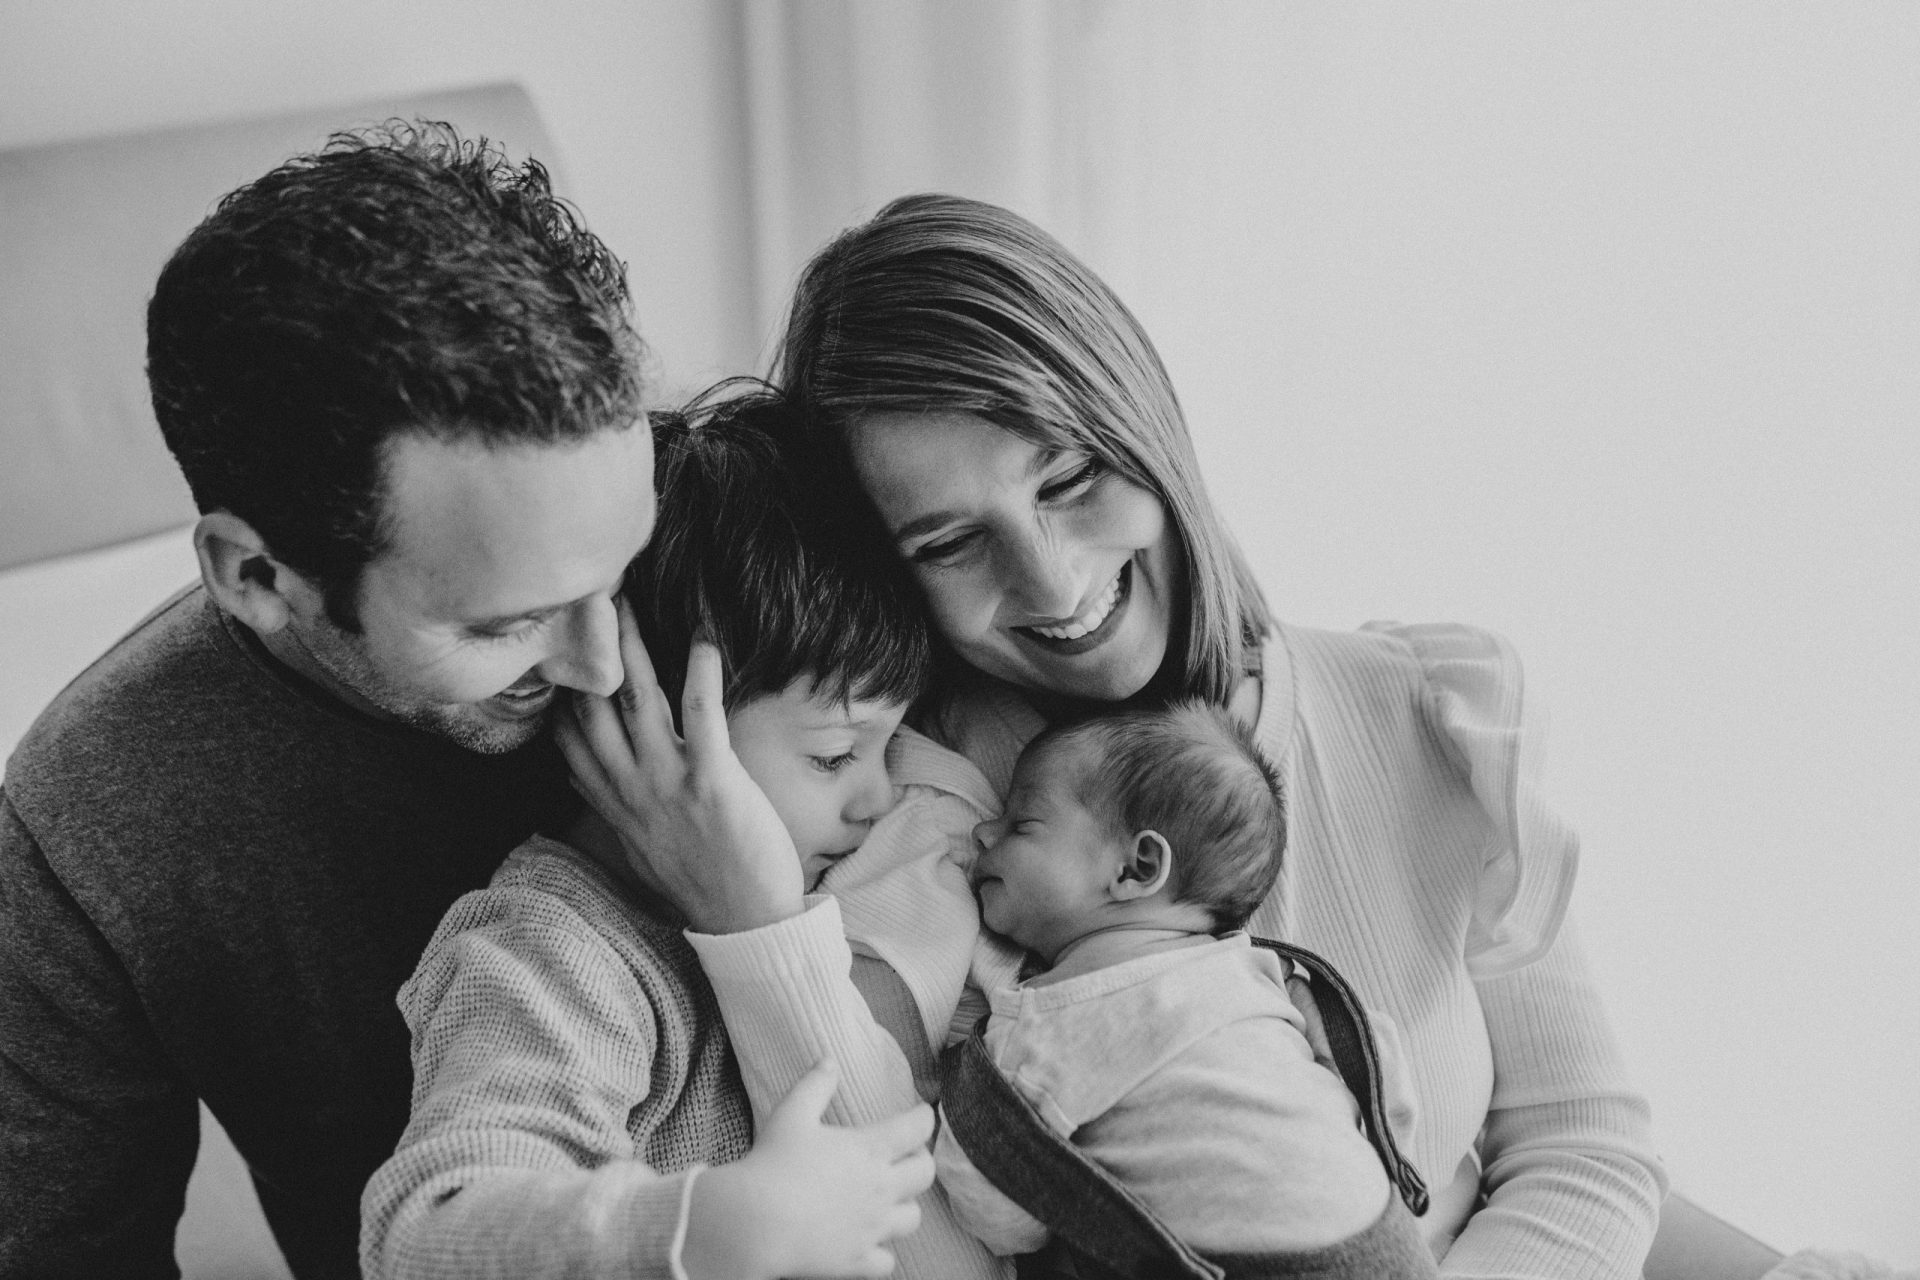 fotografía en blanco y negro de una familia feliz